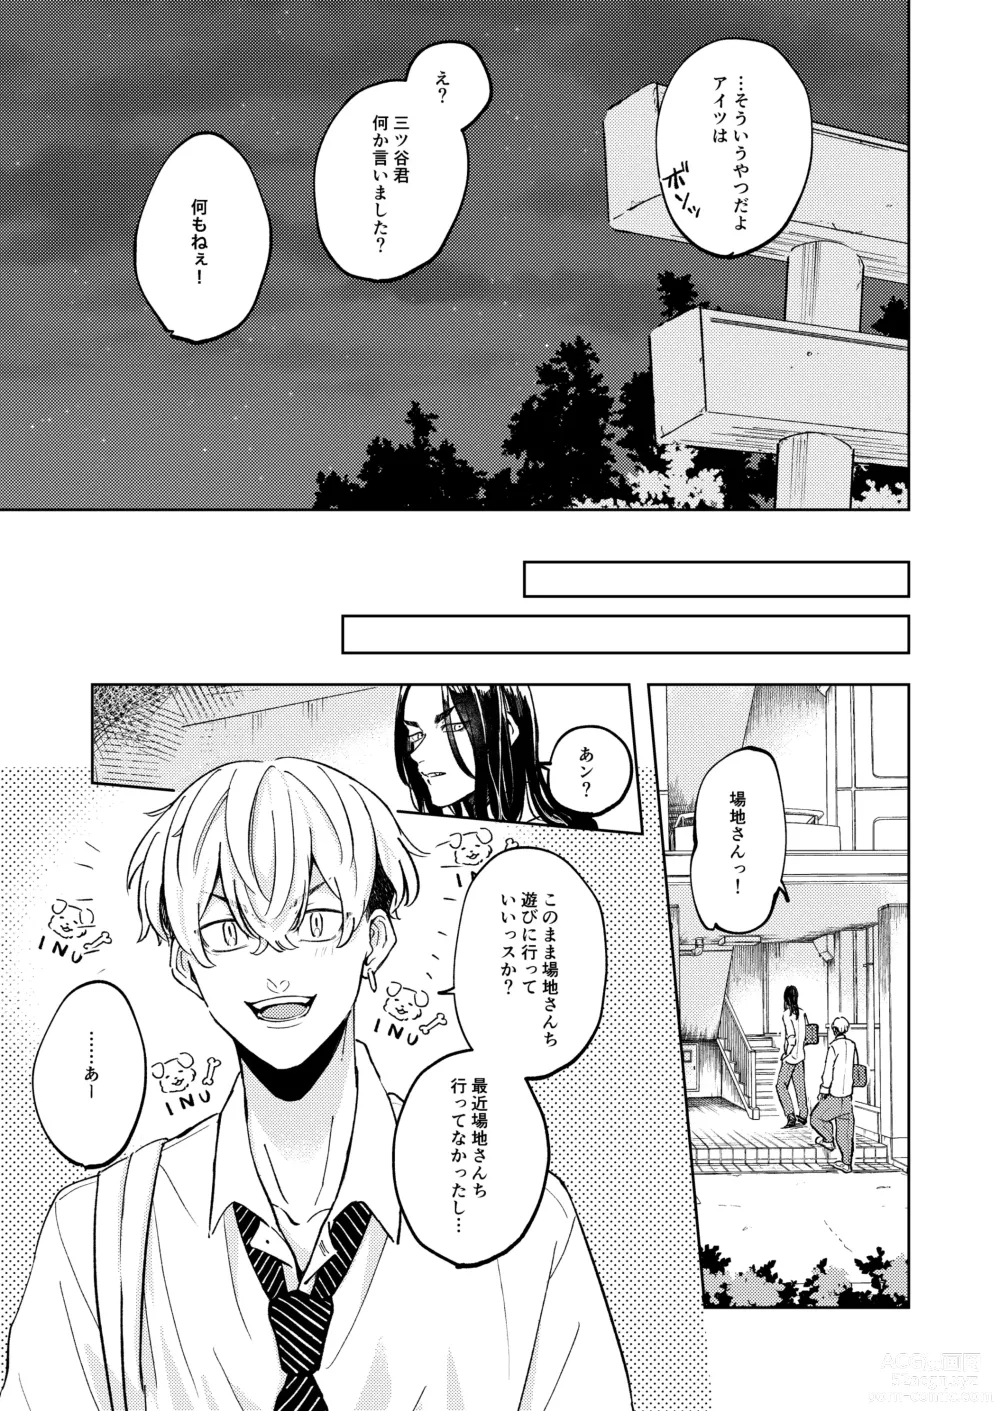 Page 14 of doujinshi Ore no Hou ga Suki desu